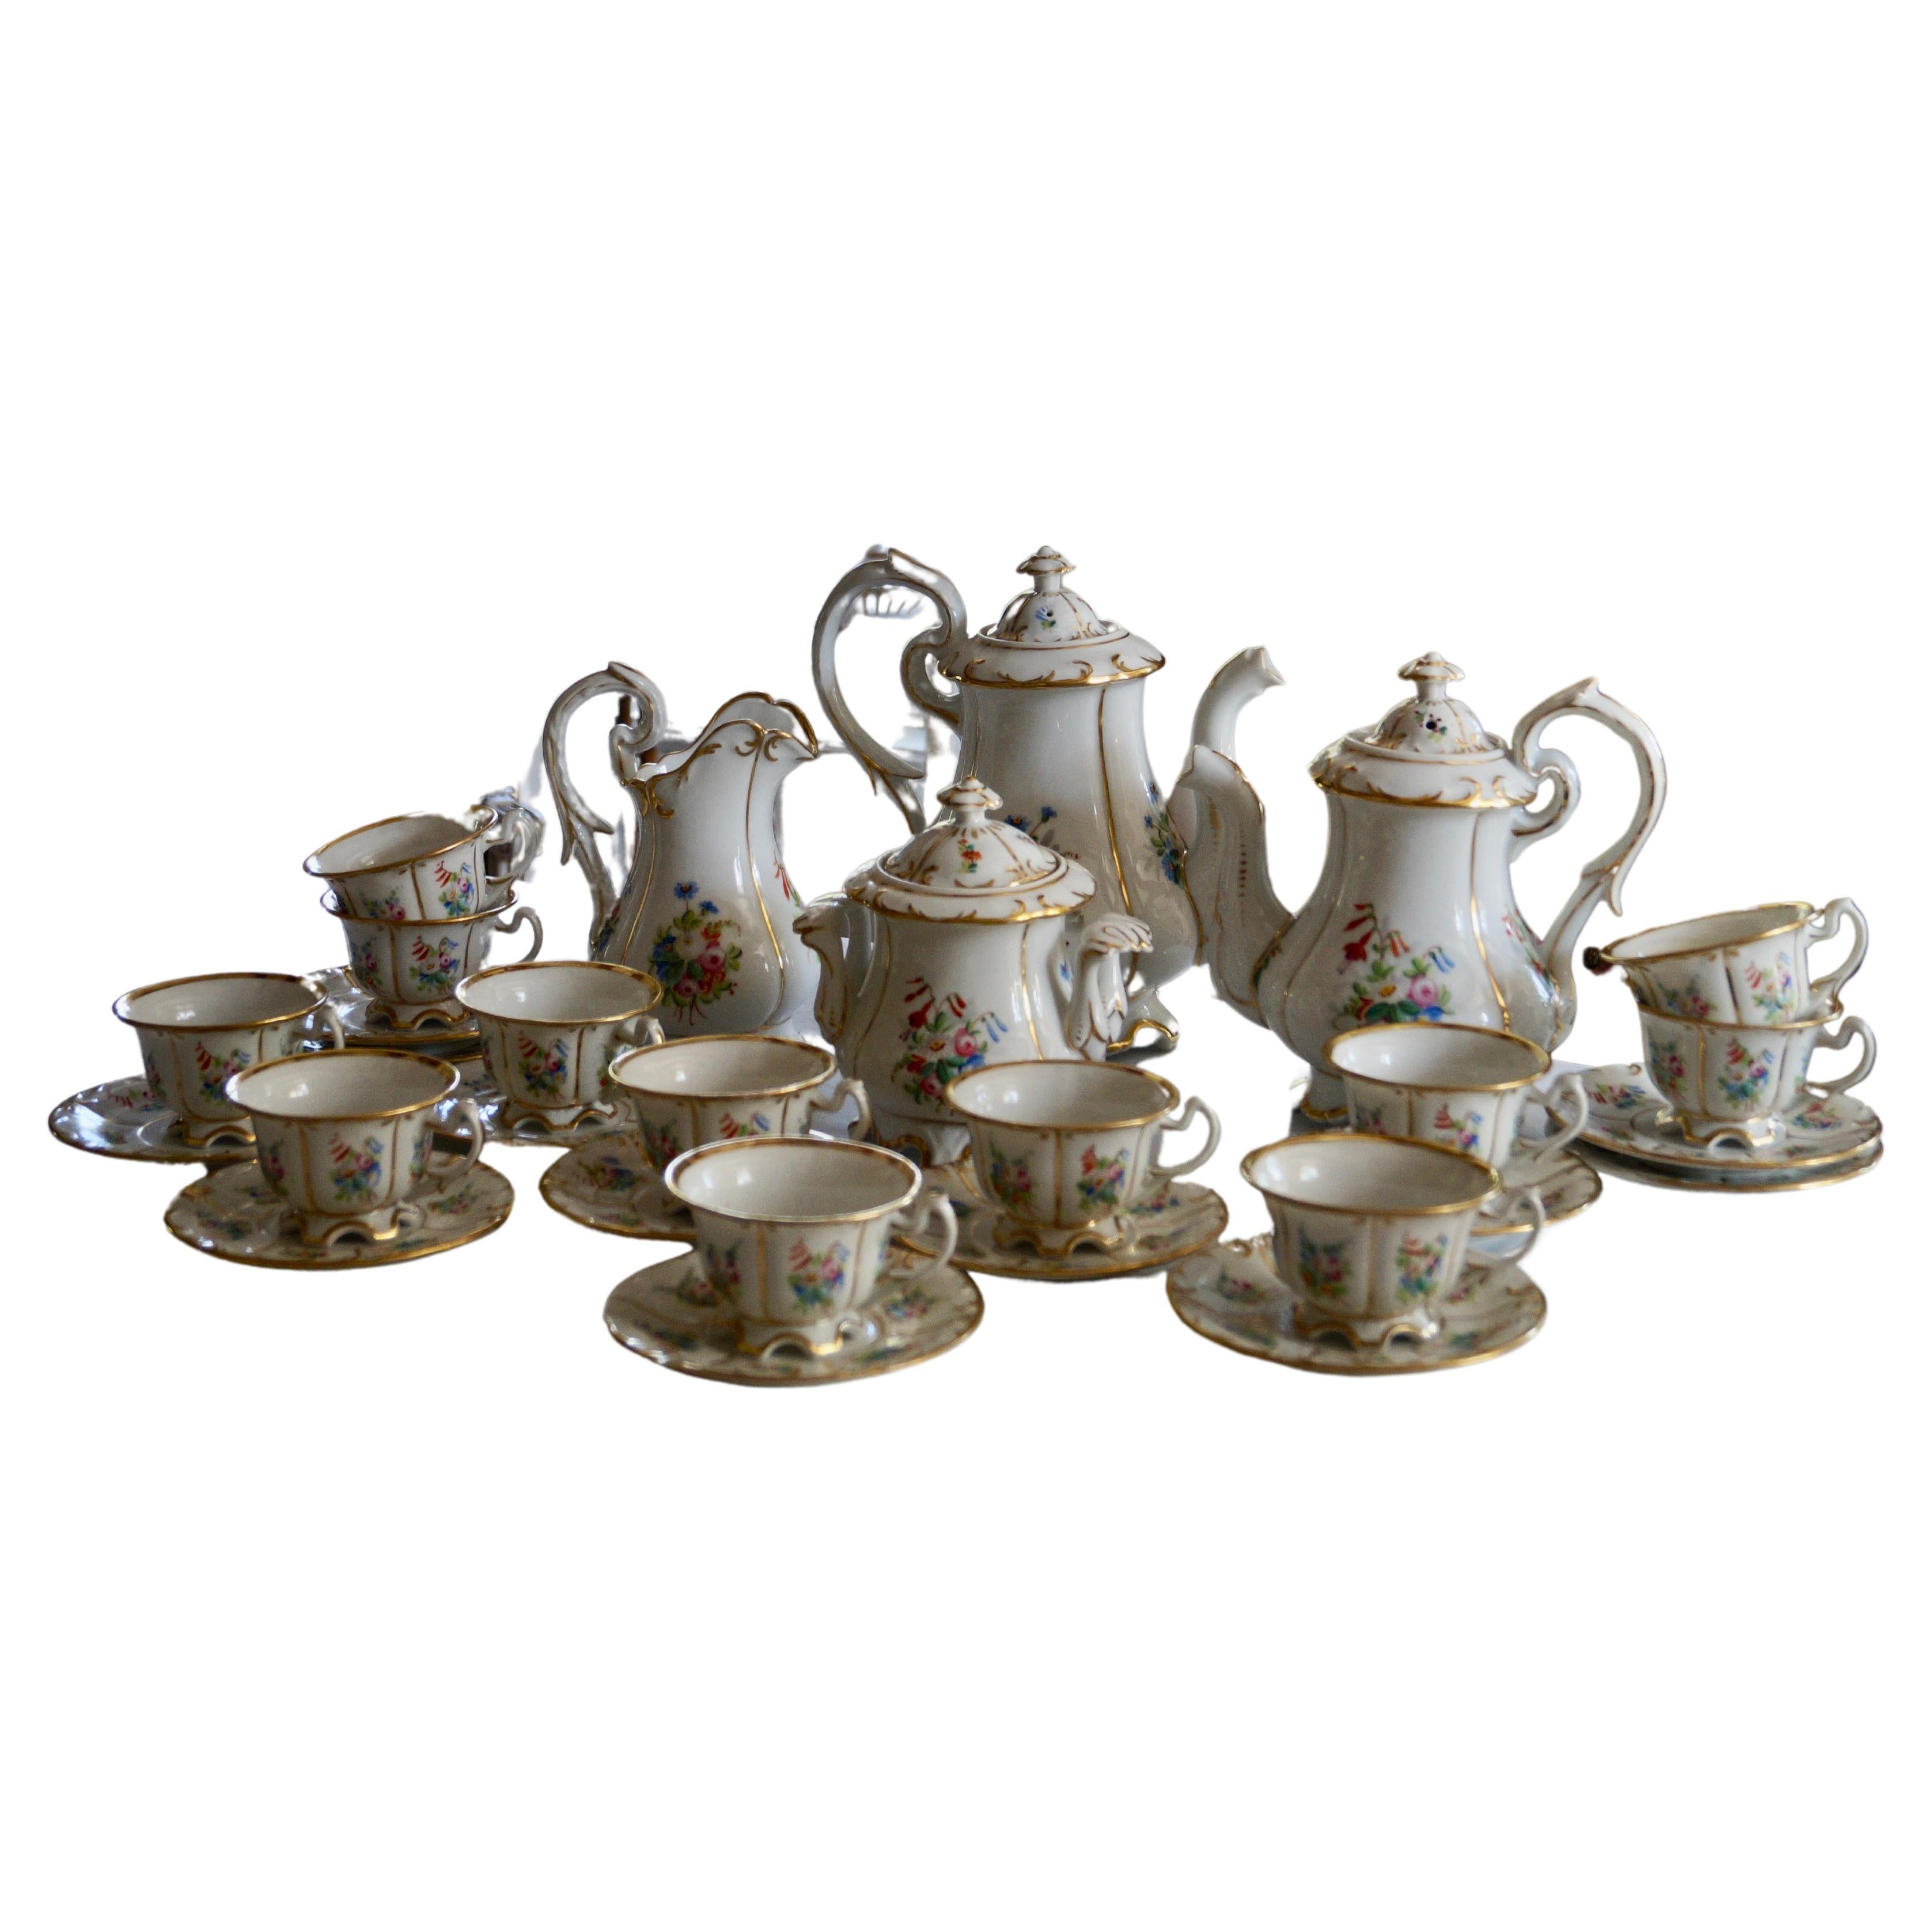 Schöne Antike Old Paris Porzellan Kaffee Tee Service 1860-1880